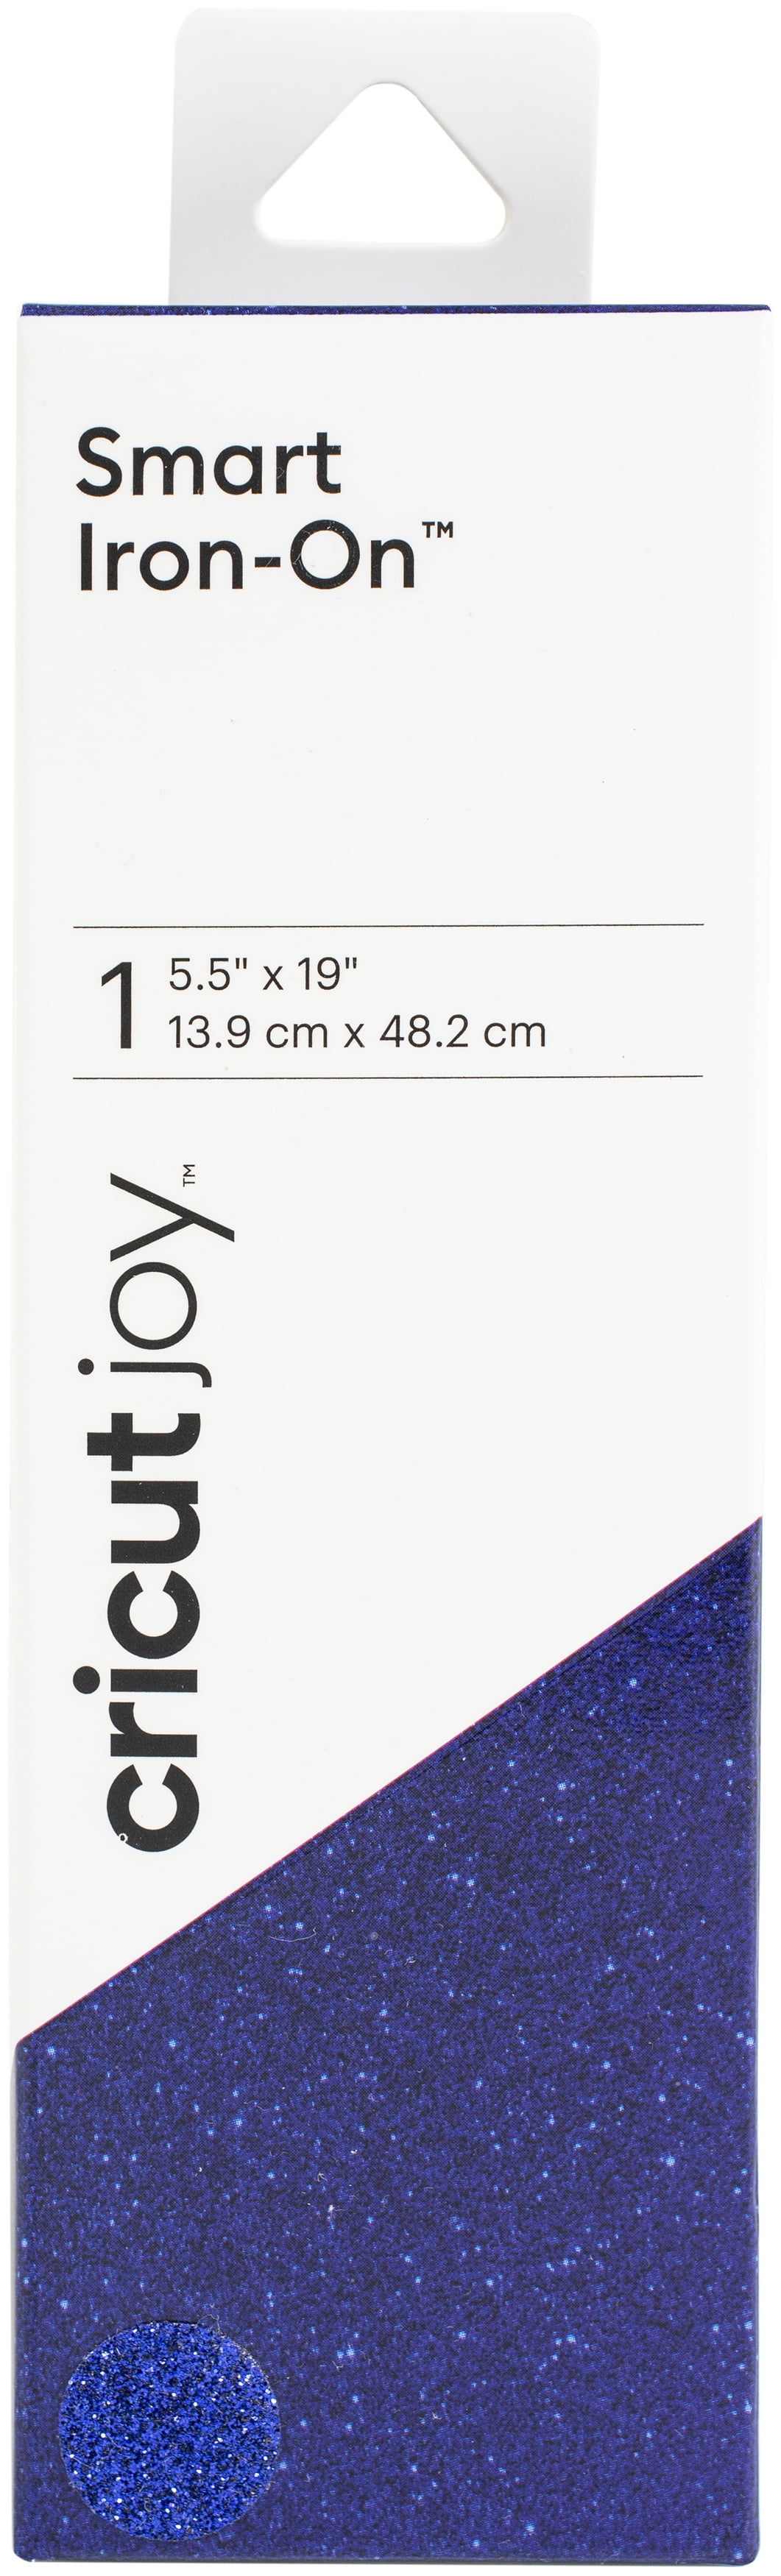 Cricut Joy™ Smart Iron-On™ Vinyl Glitter, White, 5.5 x 19 